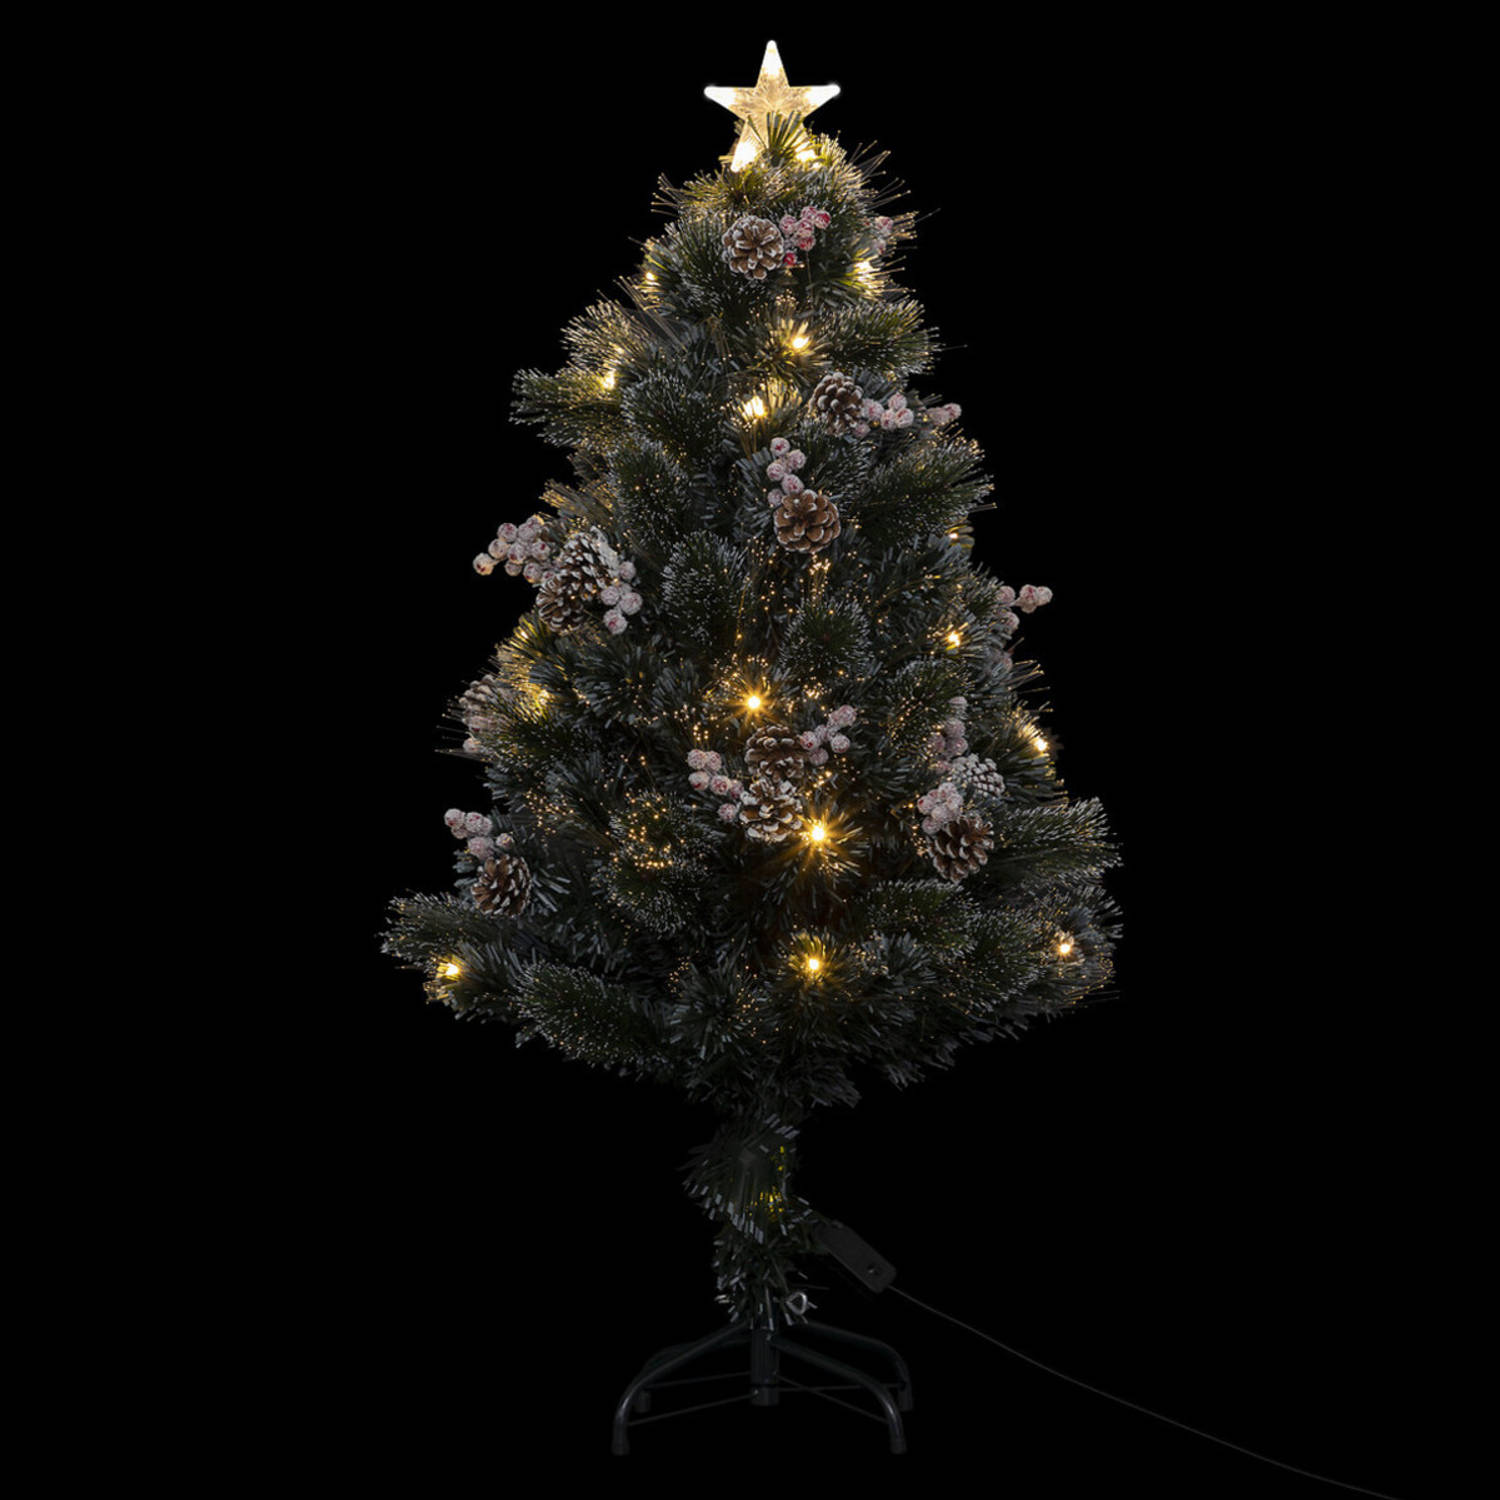 Feeric lights and christmas kunst kerstboom -120 cm - met deco en licht